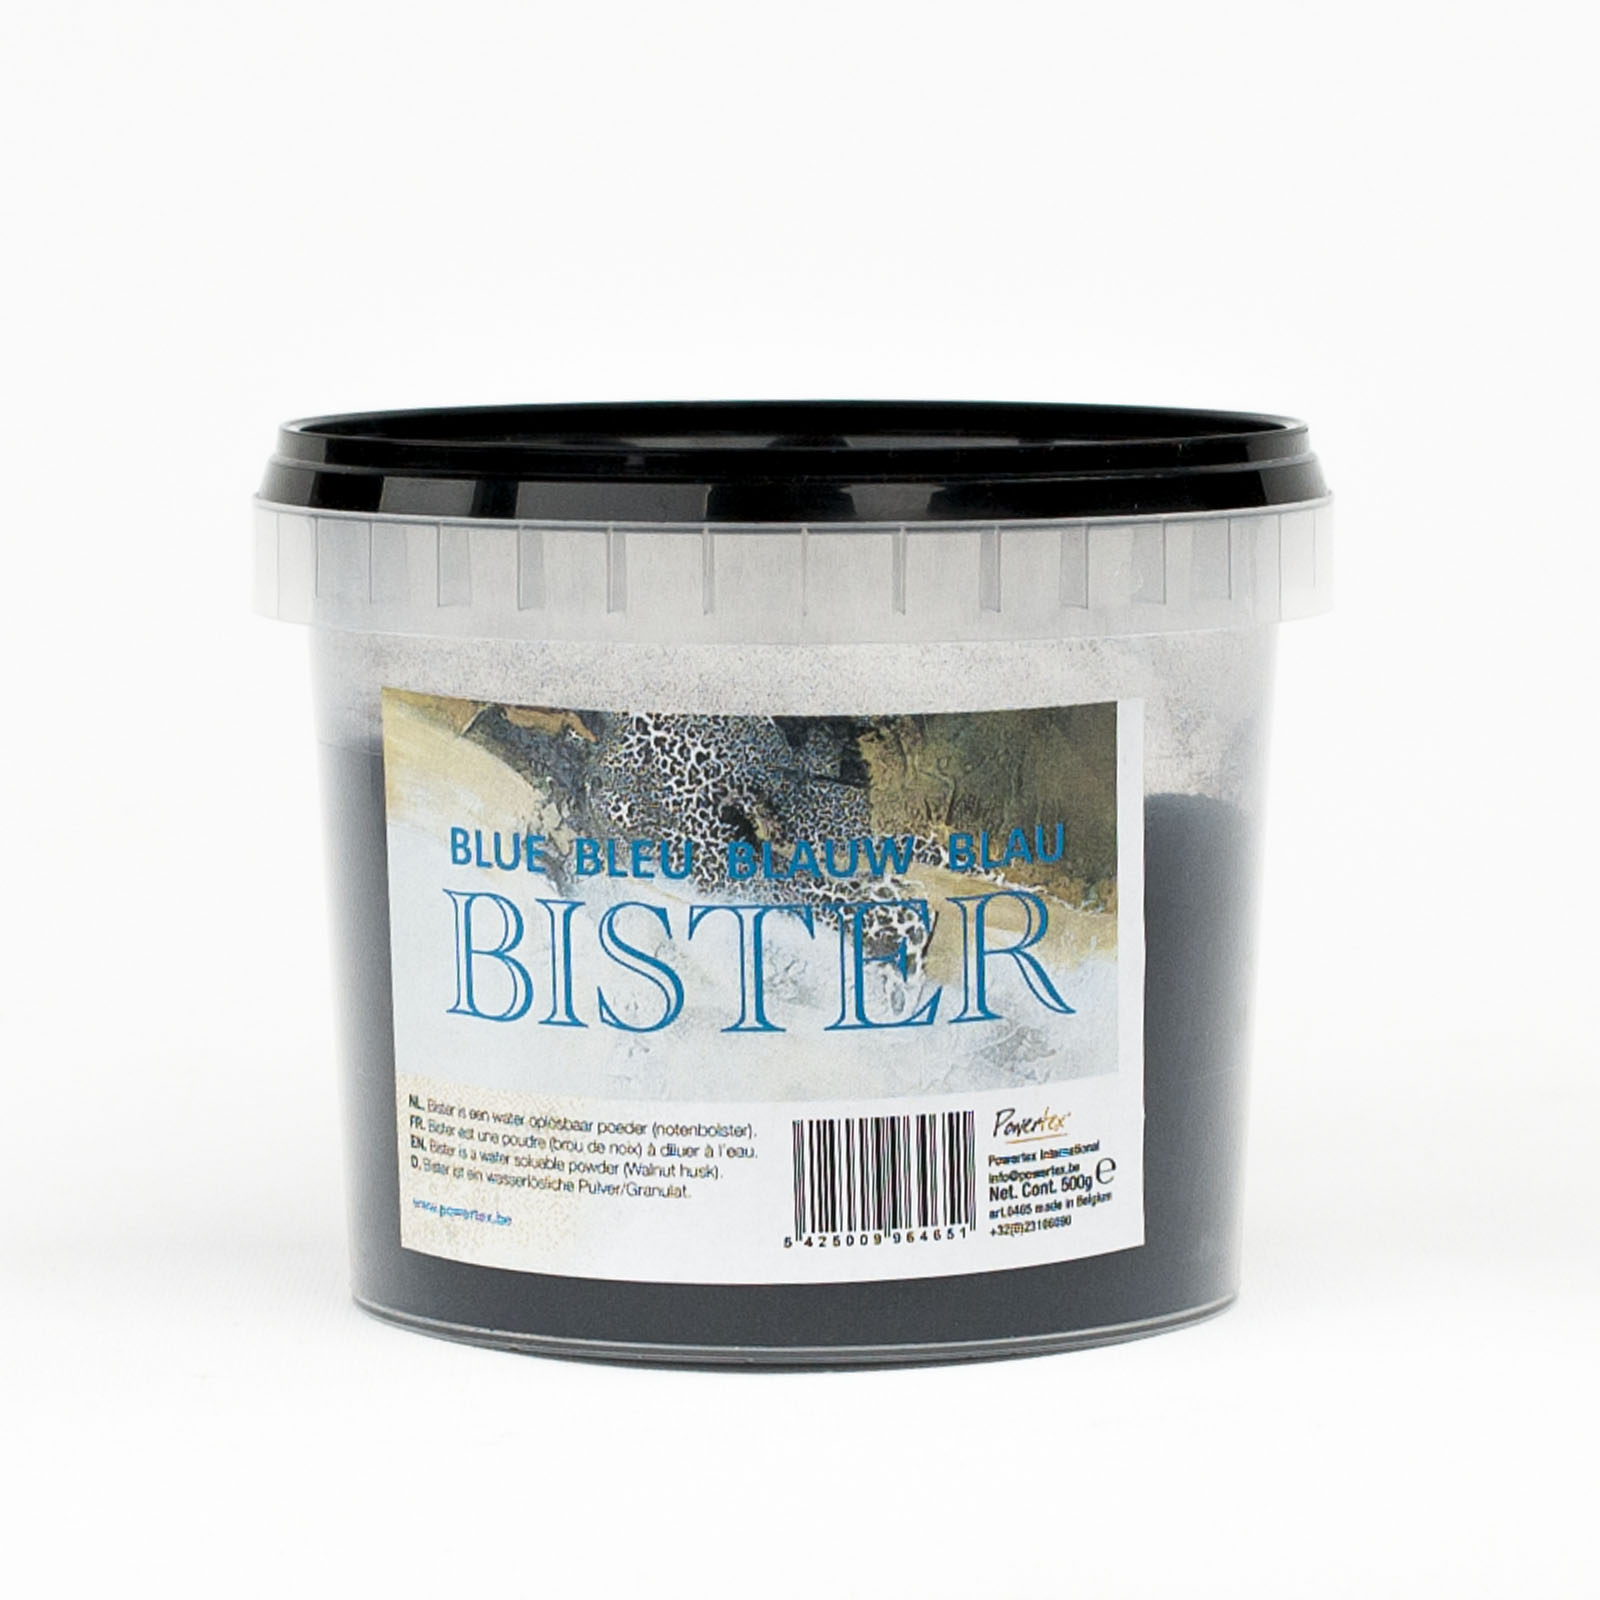 Powertex • Bister powder 500g Blue